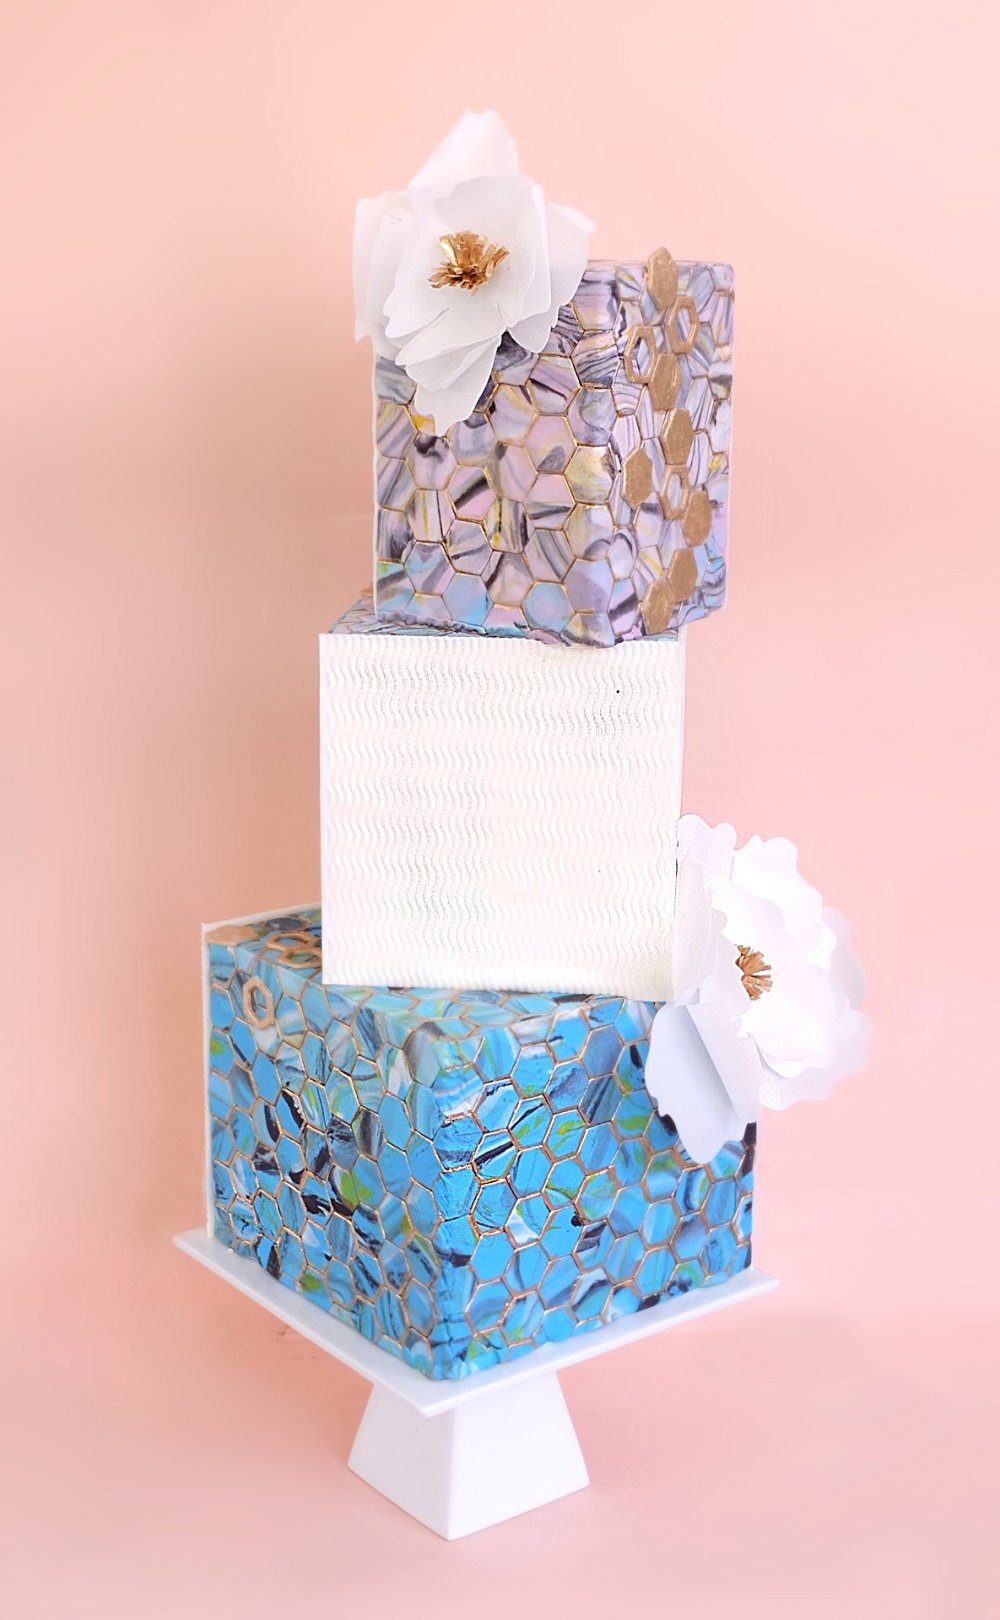 Стильный геометричный свадебный торт, покрытый мраморными шестигранниками из мастики, текстурированными белыми панелями и украшенный легкими вафельными цветами с золотыми серединками. 